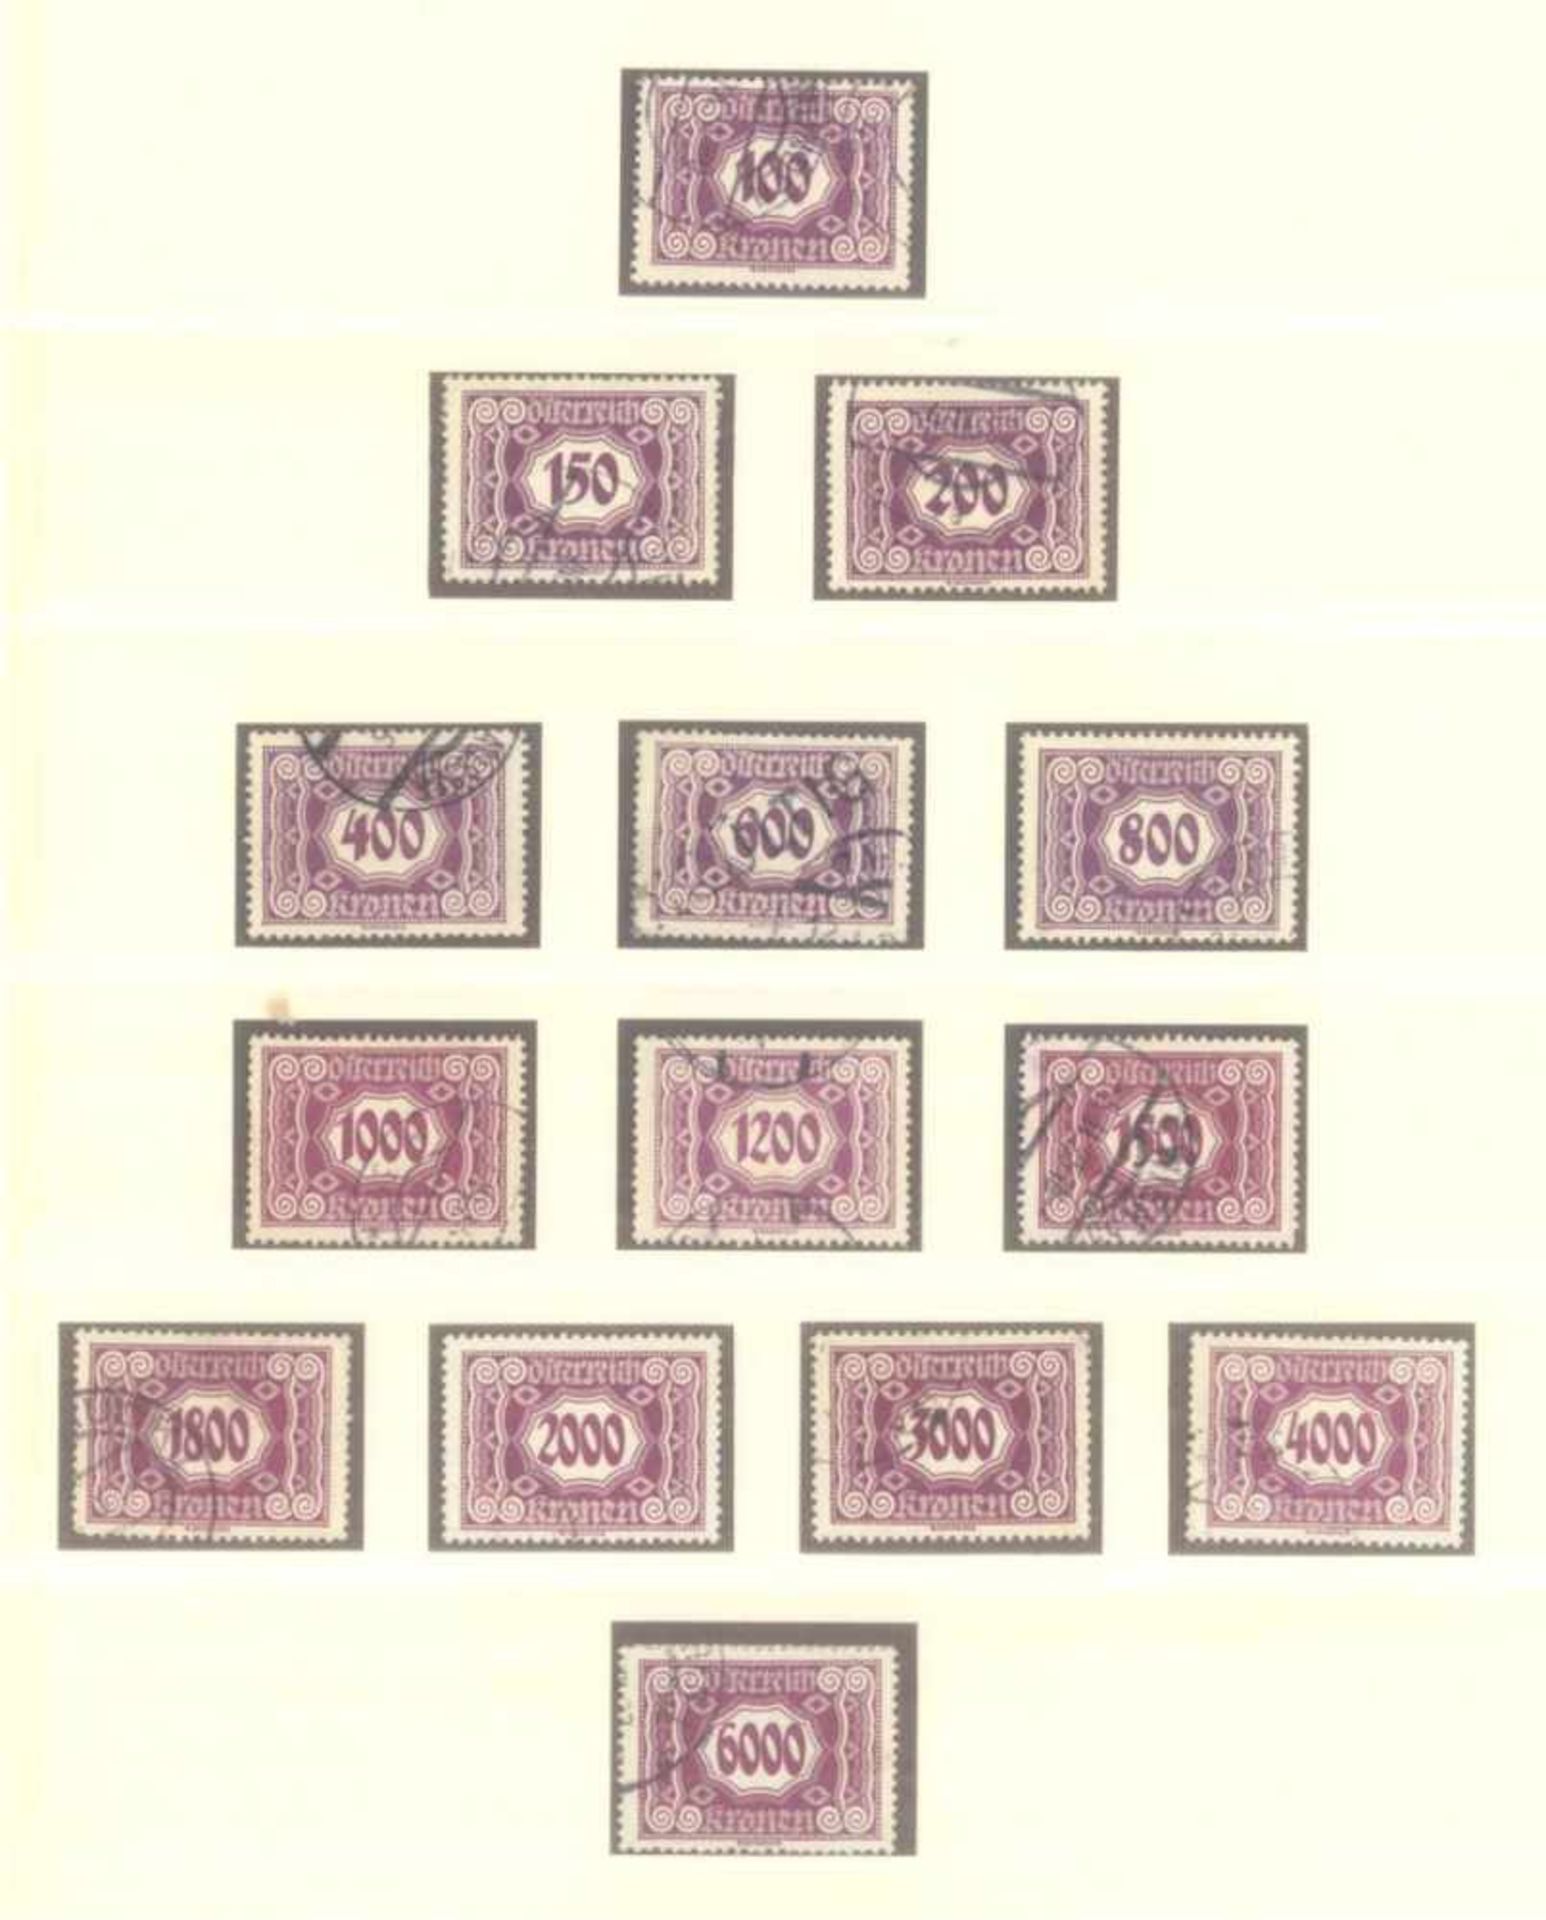 ÖSTERREICH 1919-1924, Portomarkengestempelte Sammlung in LINDNER T-Falzlosvordrucken,komplett - Bild 5 aus 5